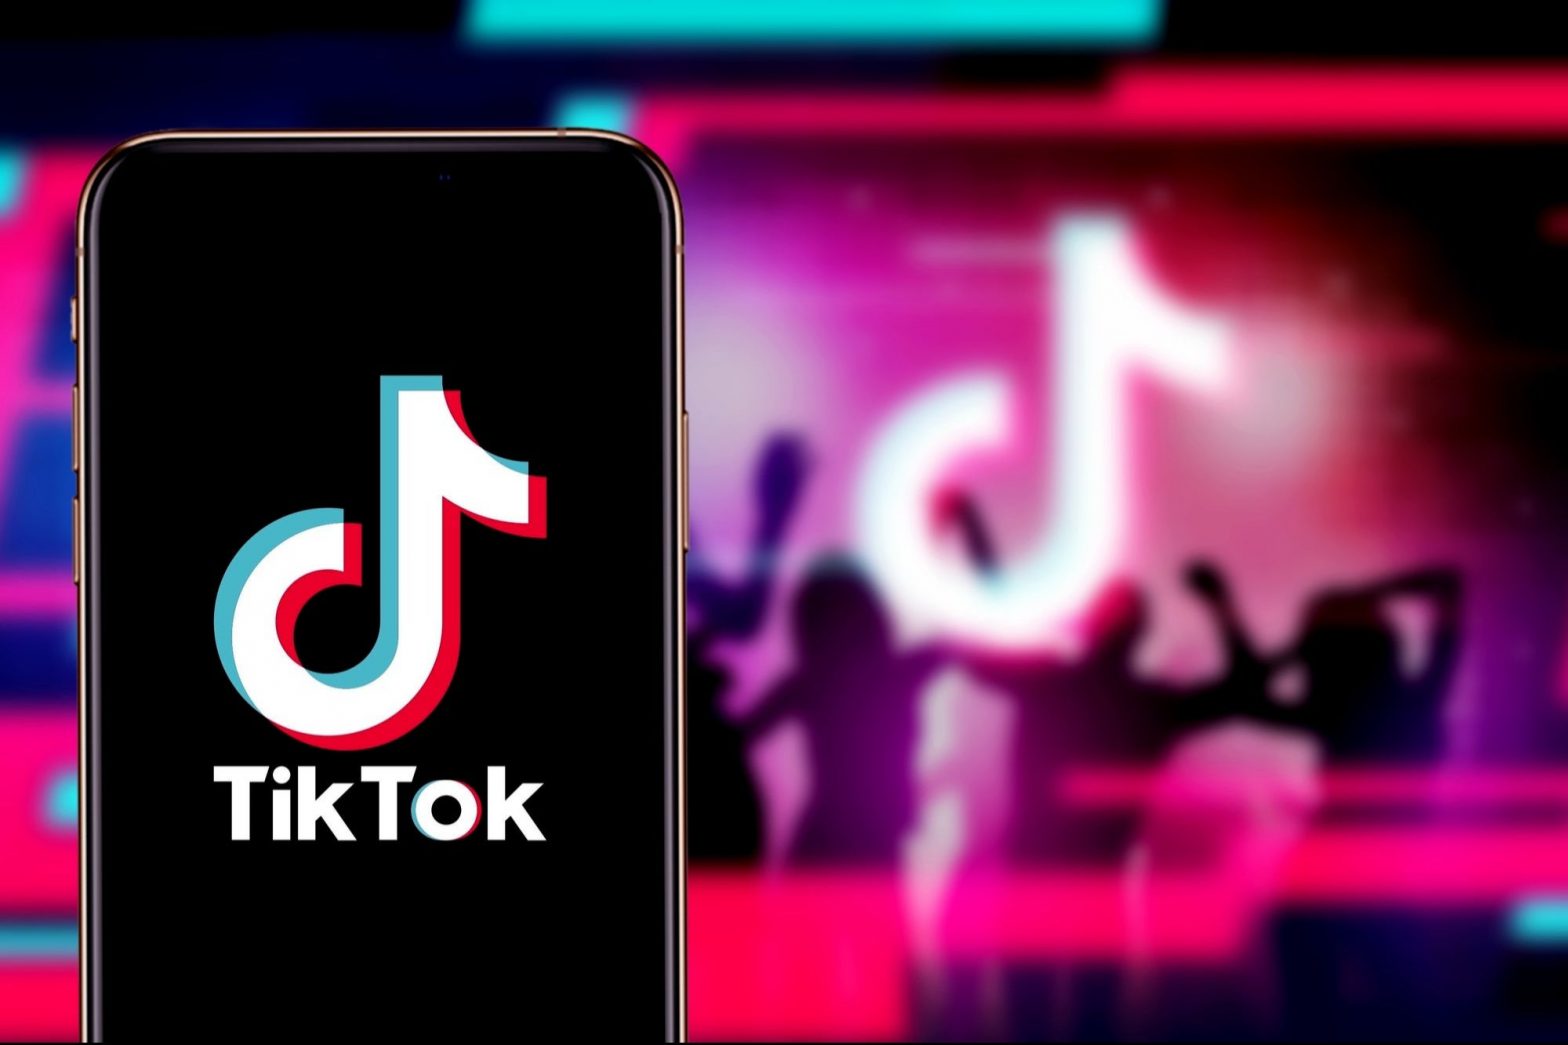 ¿Cuál es la característica que más te disgusta de TikTok?